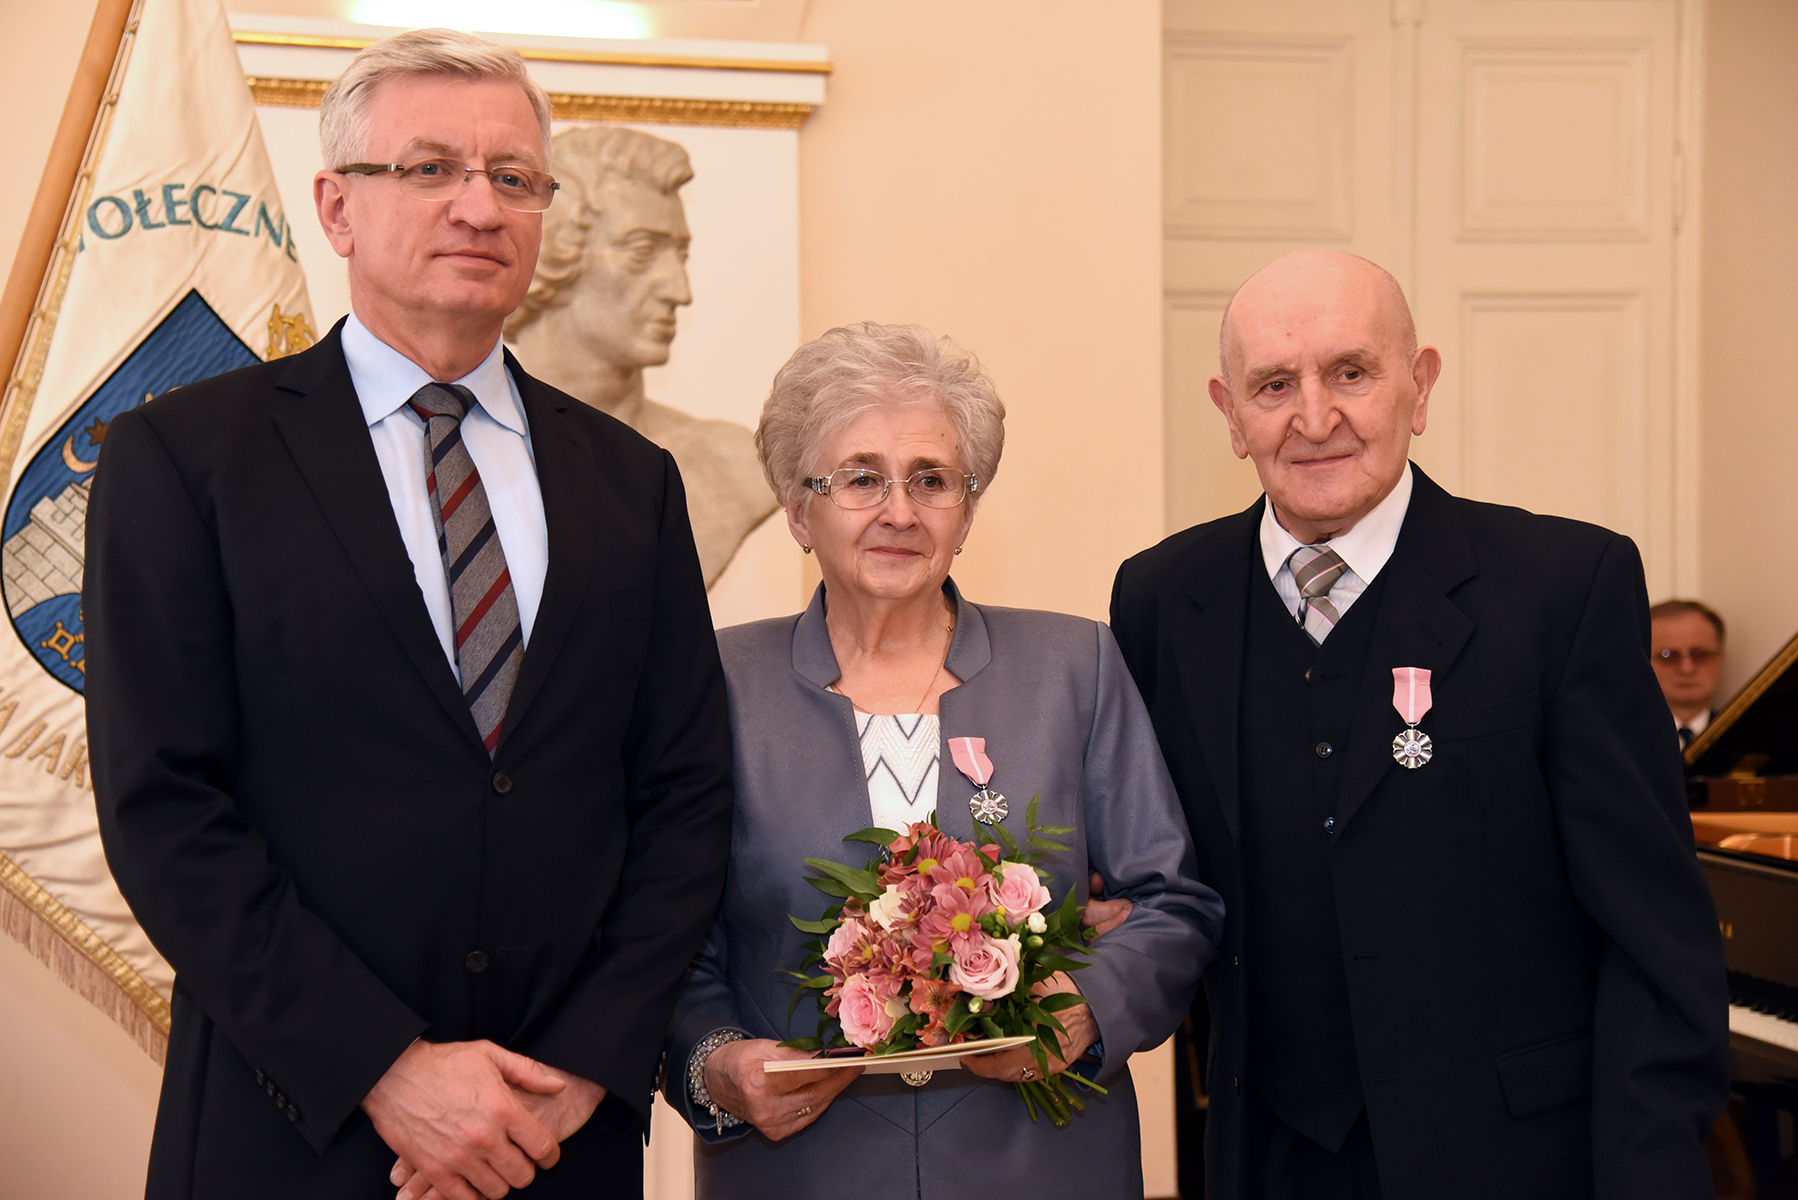 Medale za Długoletnie Pożycie Małżeńskie wręczał Jacek Jaśkowiak, prezydent Poznania - grafika artykułu